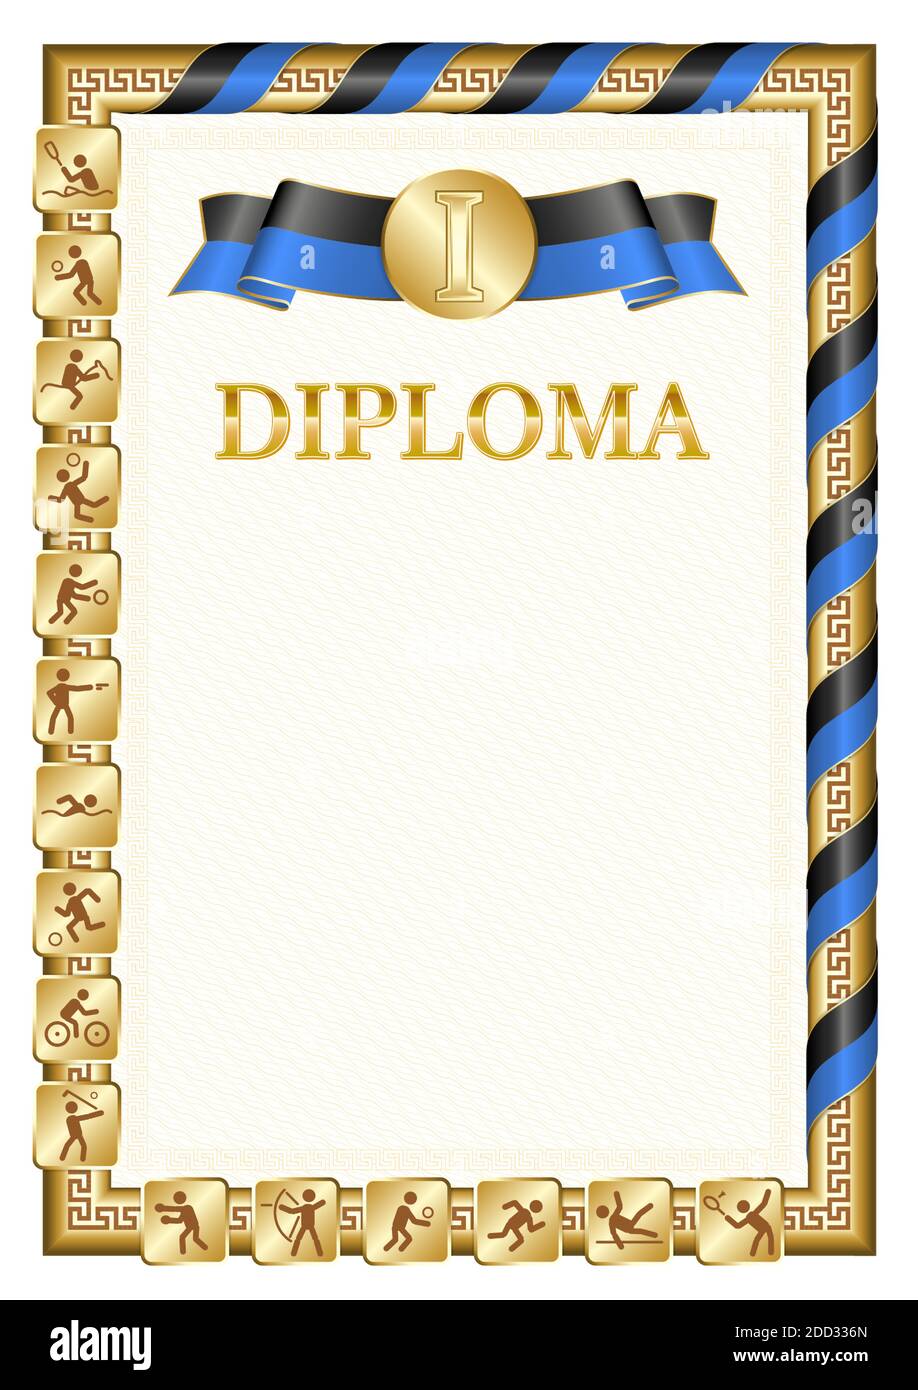 Vertikale Diplom für den ersten Platz in einem Sportwettbewerb, goldene Farbe mit einem Band die Farbe der Flagge von Tonga. Vektorbild. Stock Vektor